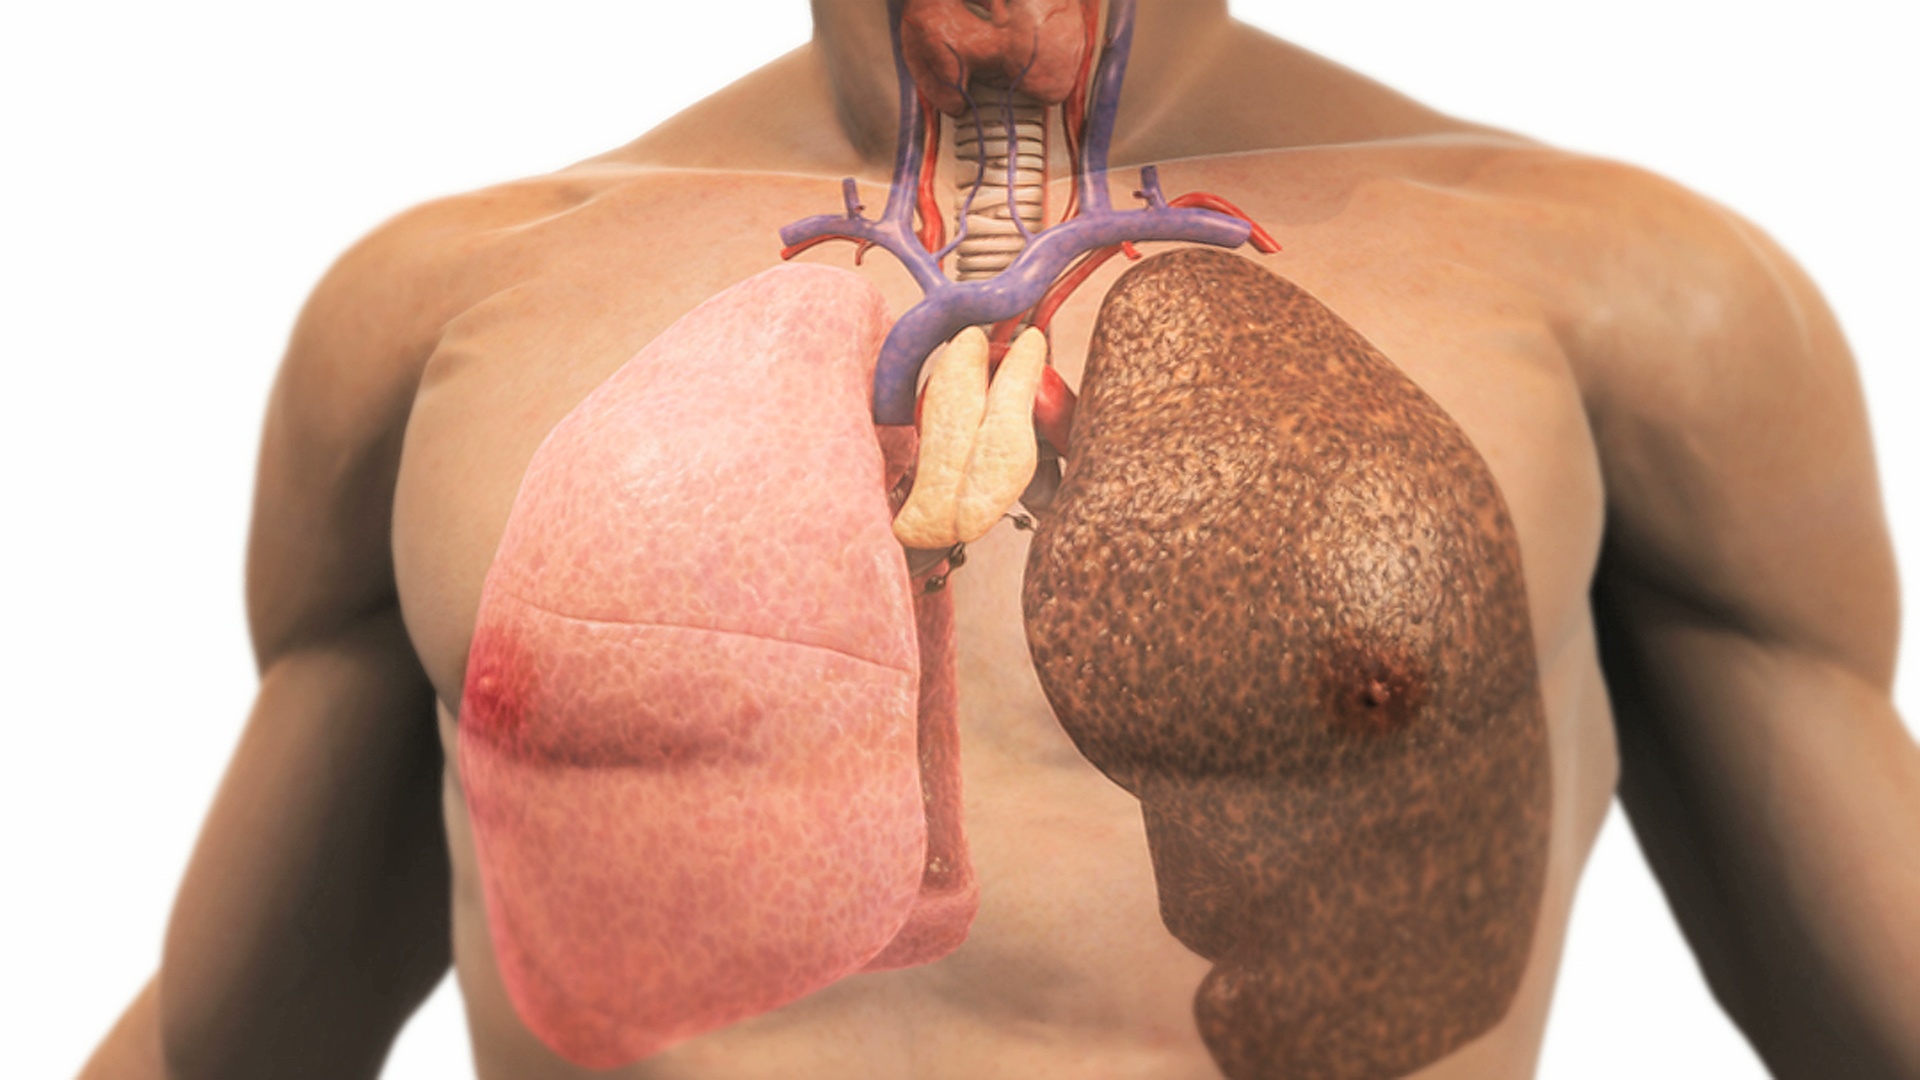 动画描绘了一个因吸烟而患病的肺。镜头拉近，尸体逐渐消失，露出肺部。视频素材